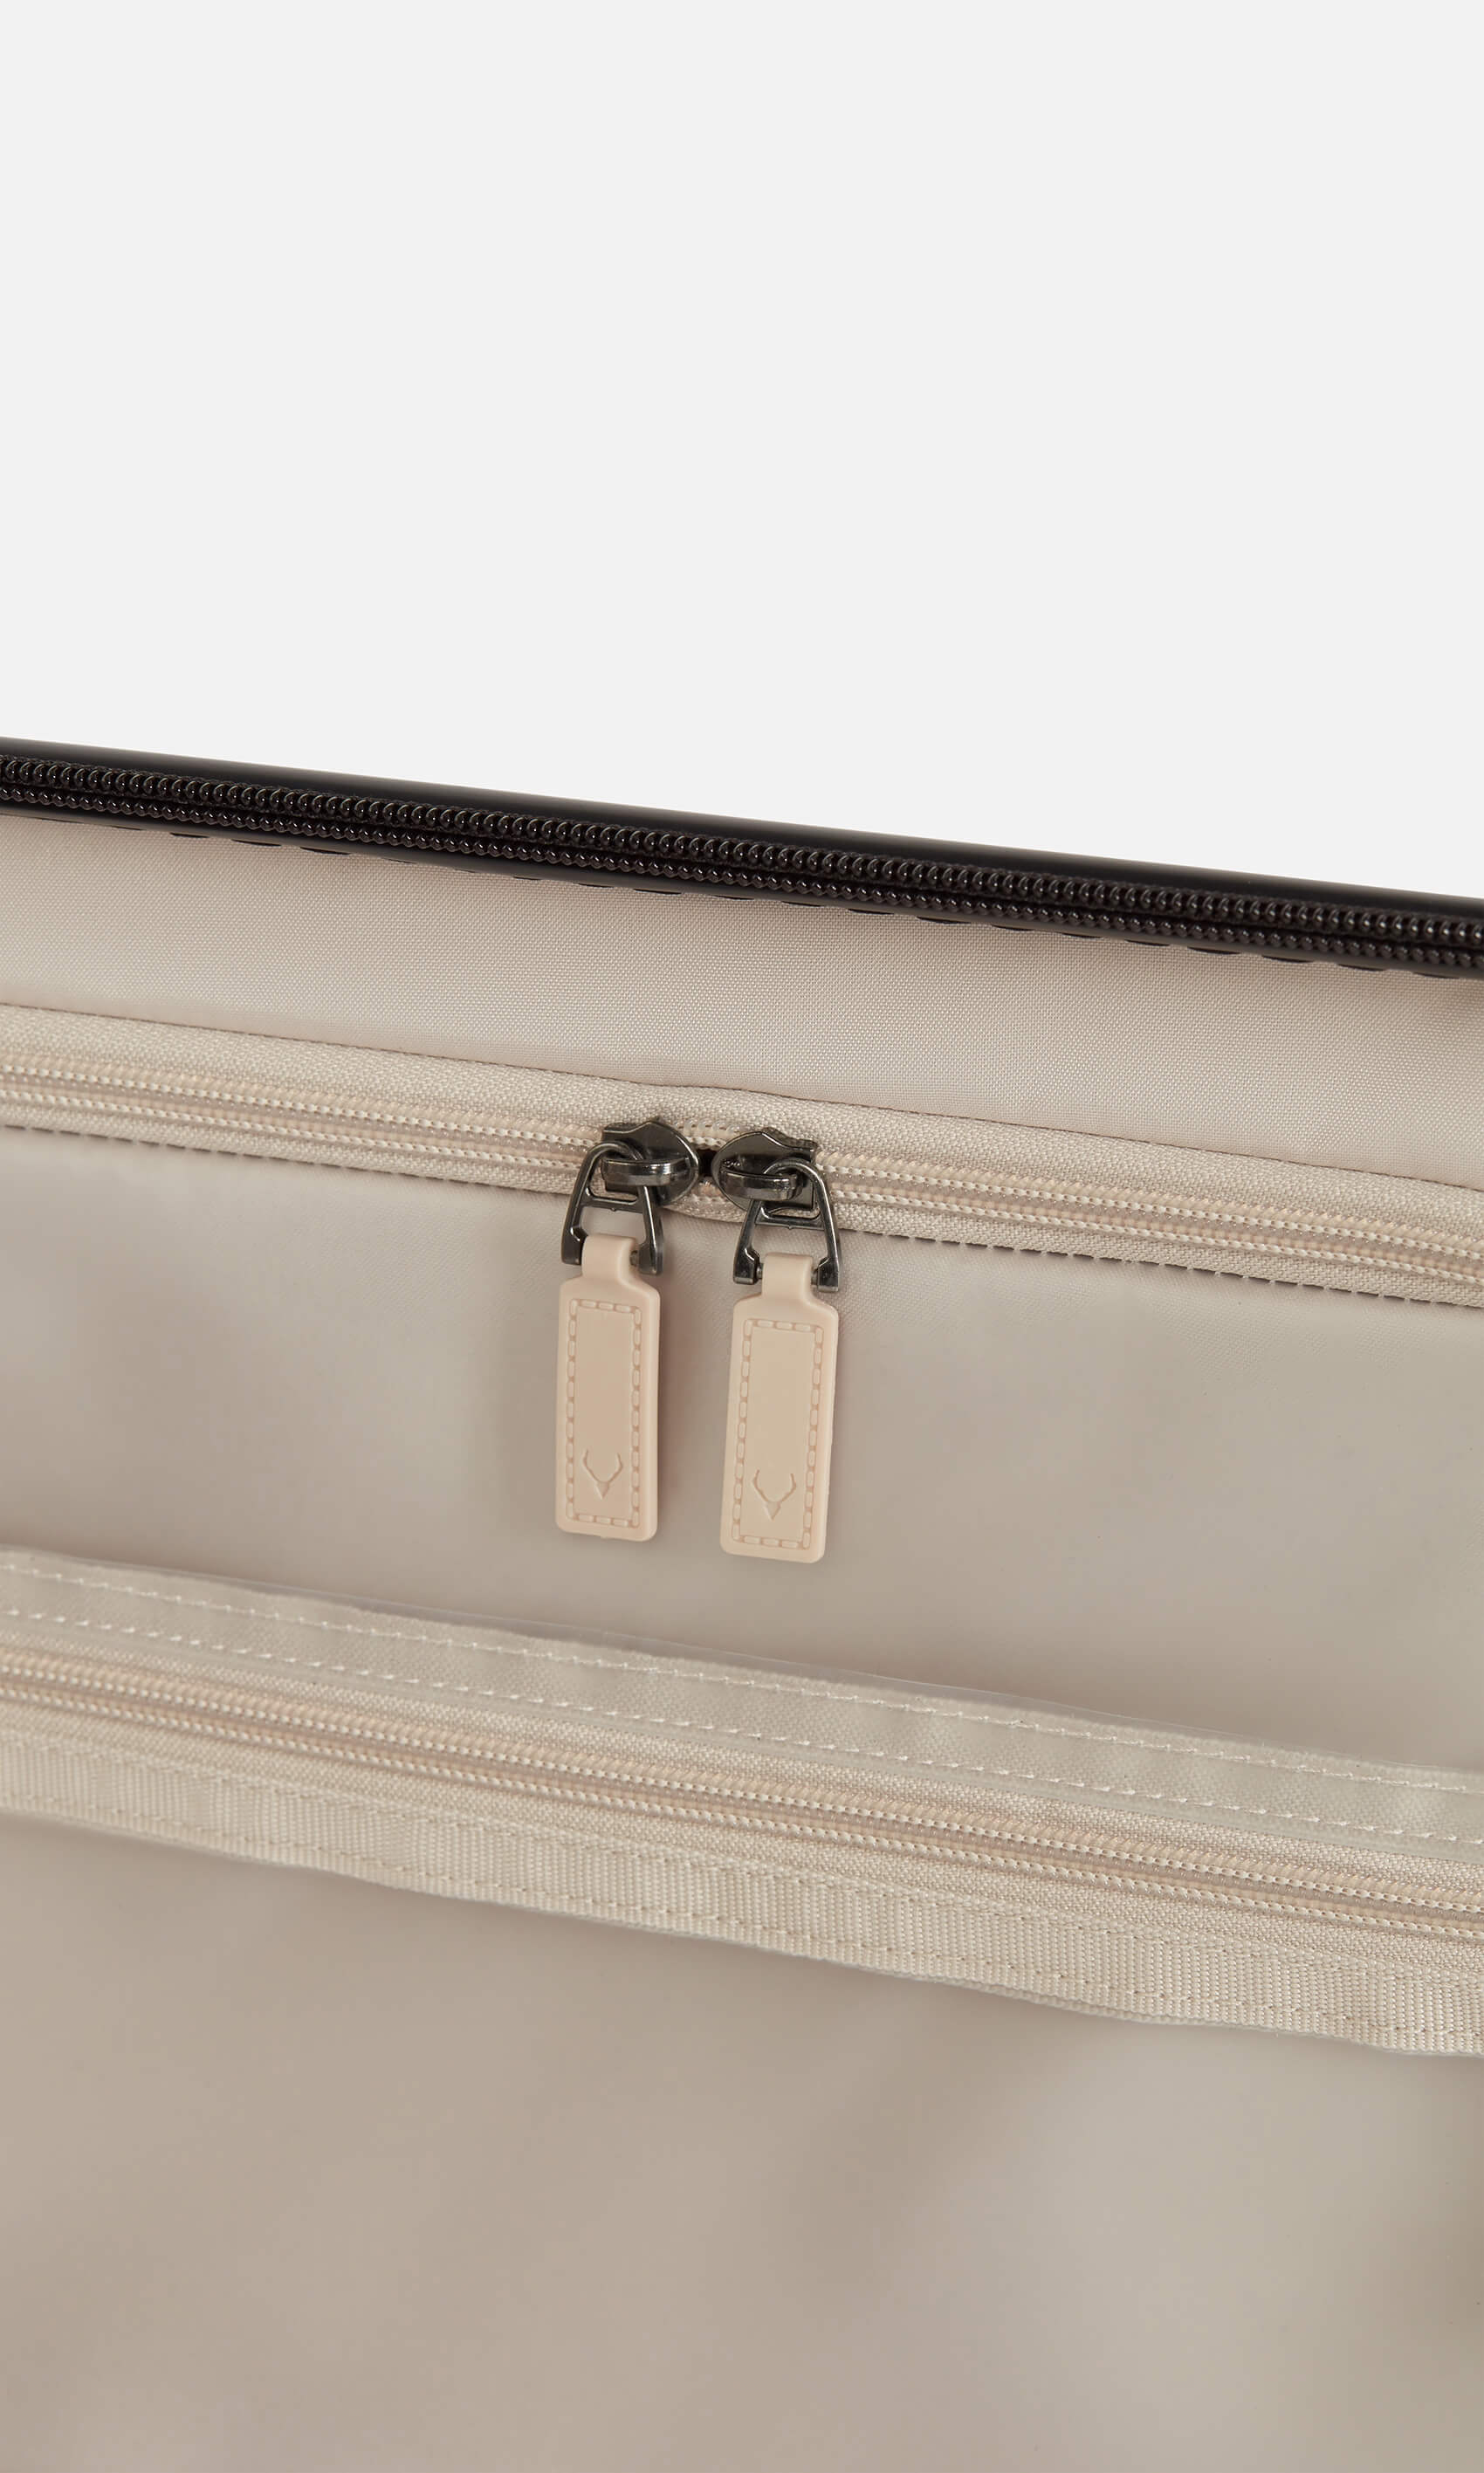 Antler Luggage -  Clifton medium in sage - Hard Suitcases Clifton Medium Suitcase Sage (Green) | Hard Suitcase | Antler UK